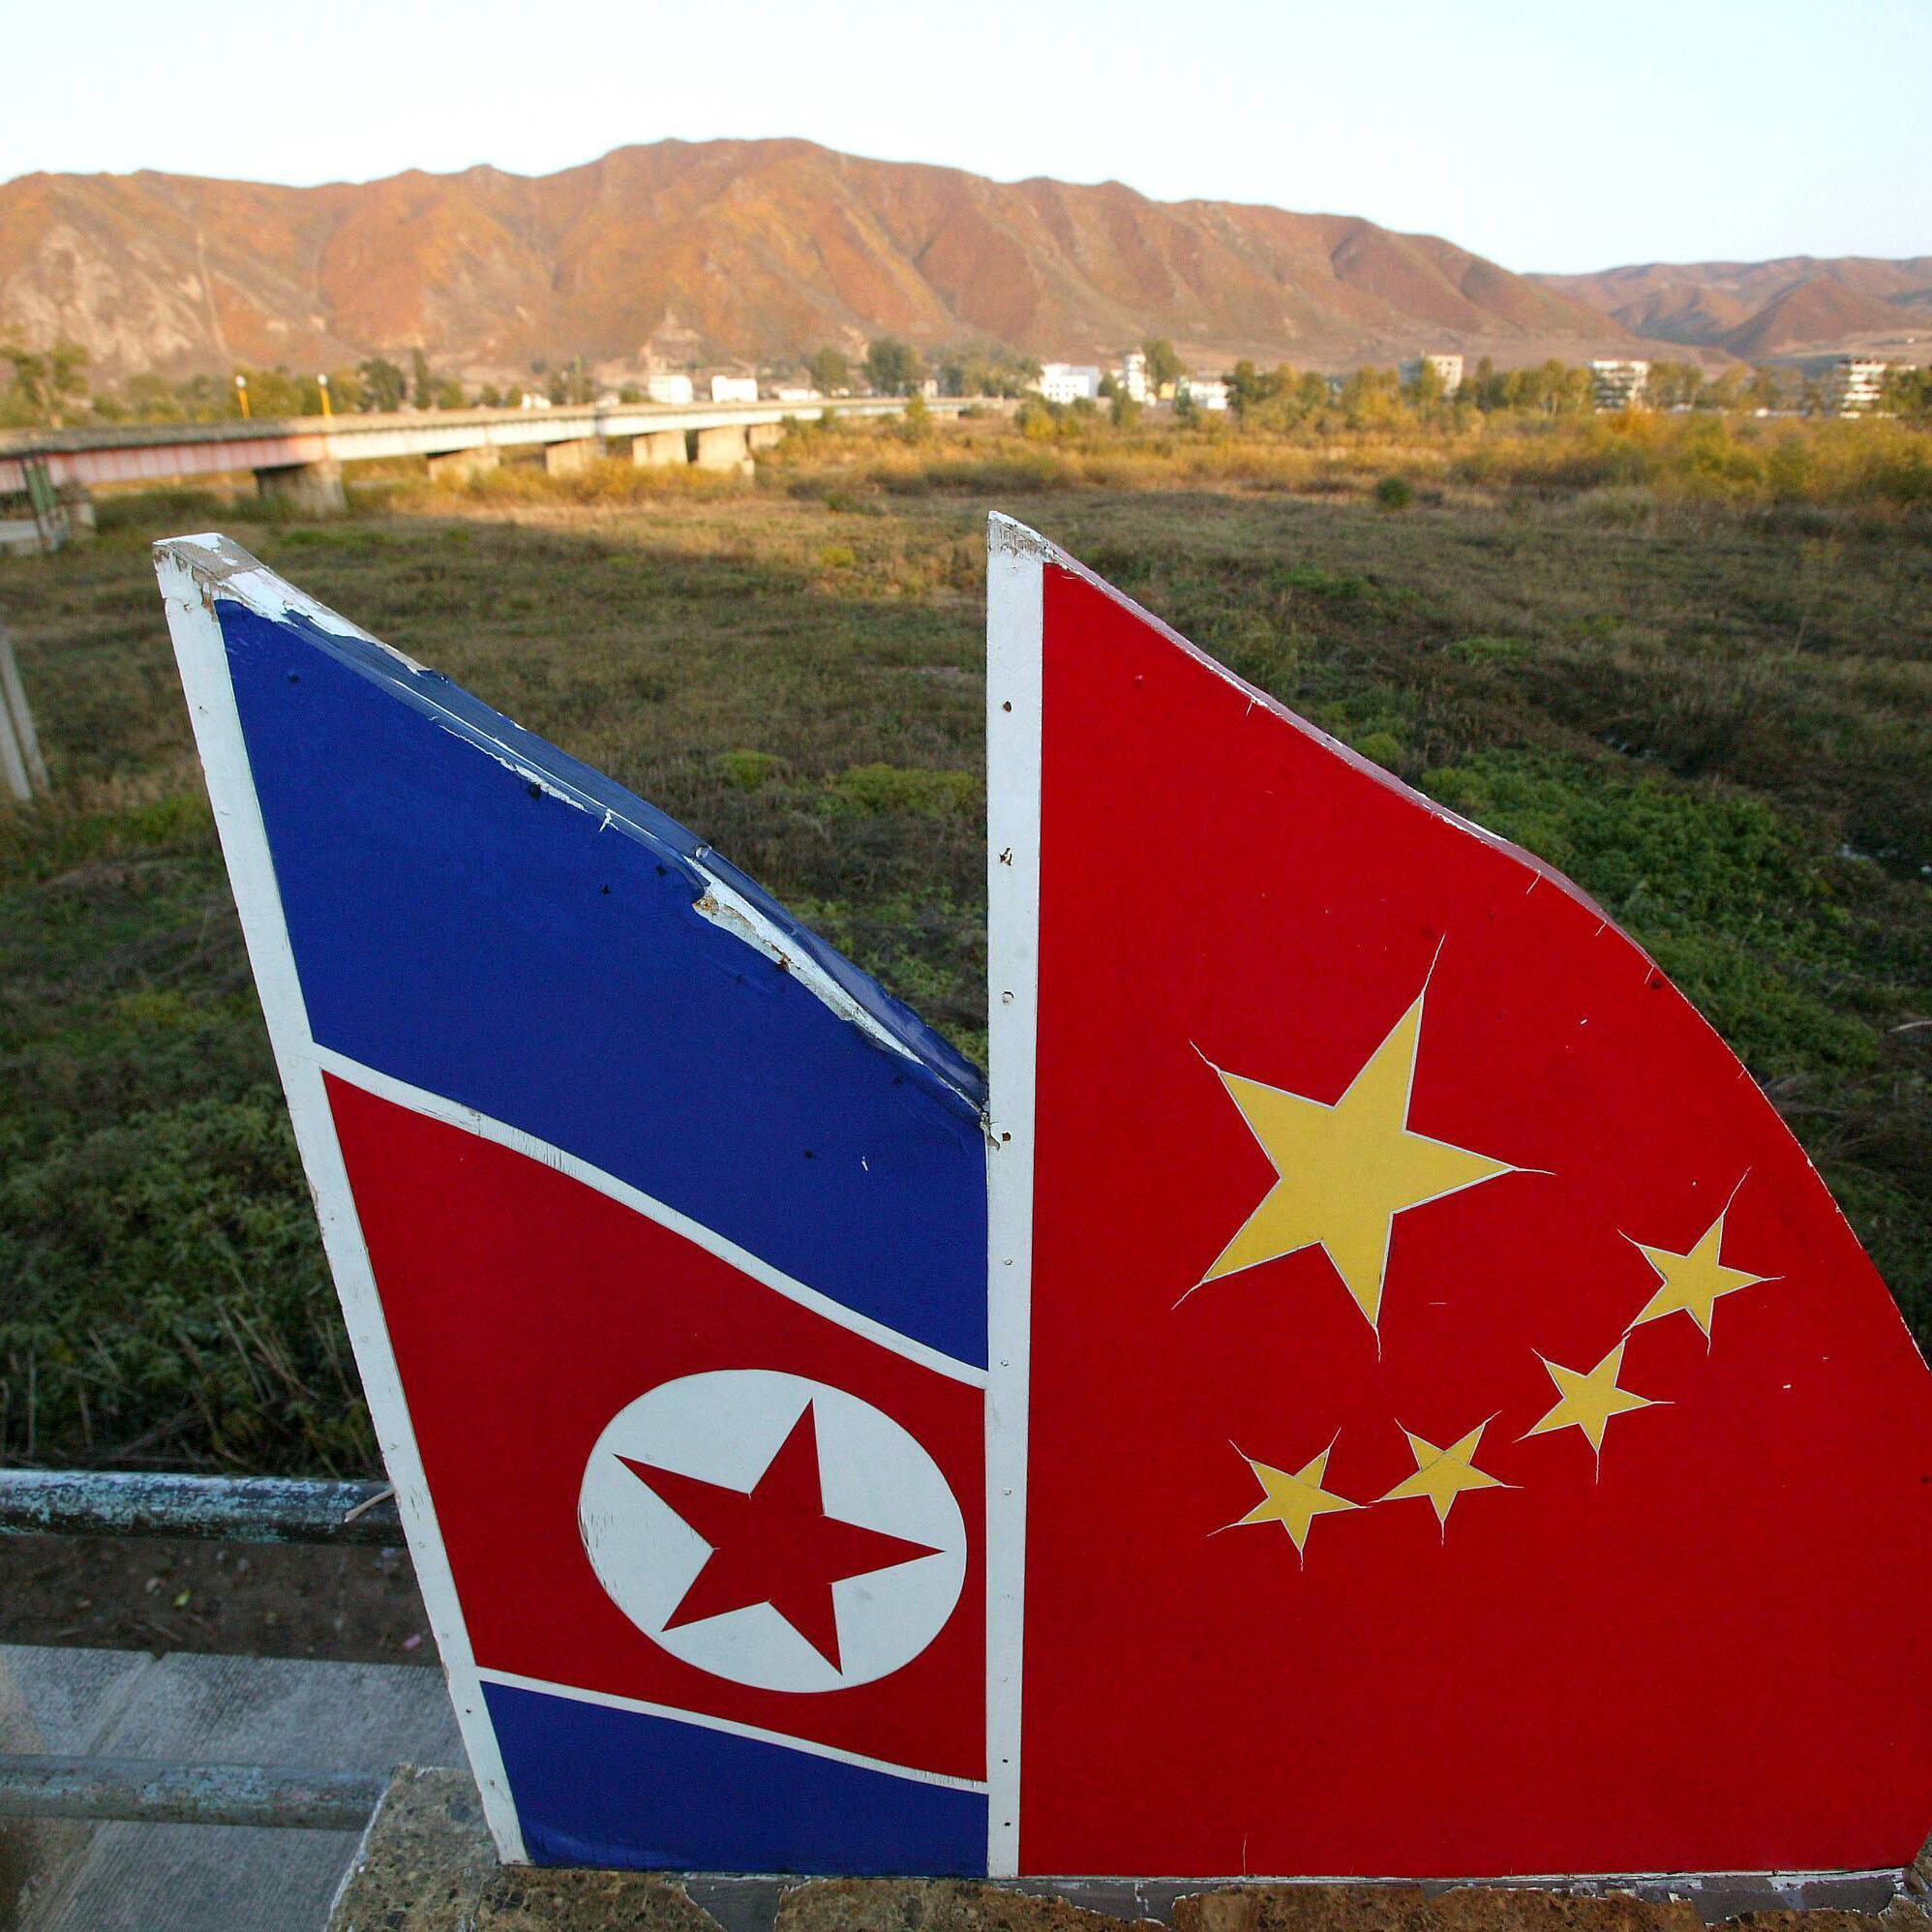 Atomstreit Mit Nordkorea Wie Viel Einfluss Hat China Auf Kim Jong Un Web De